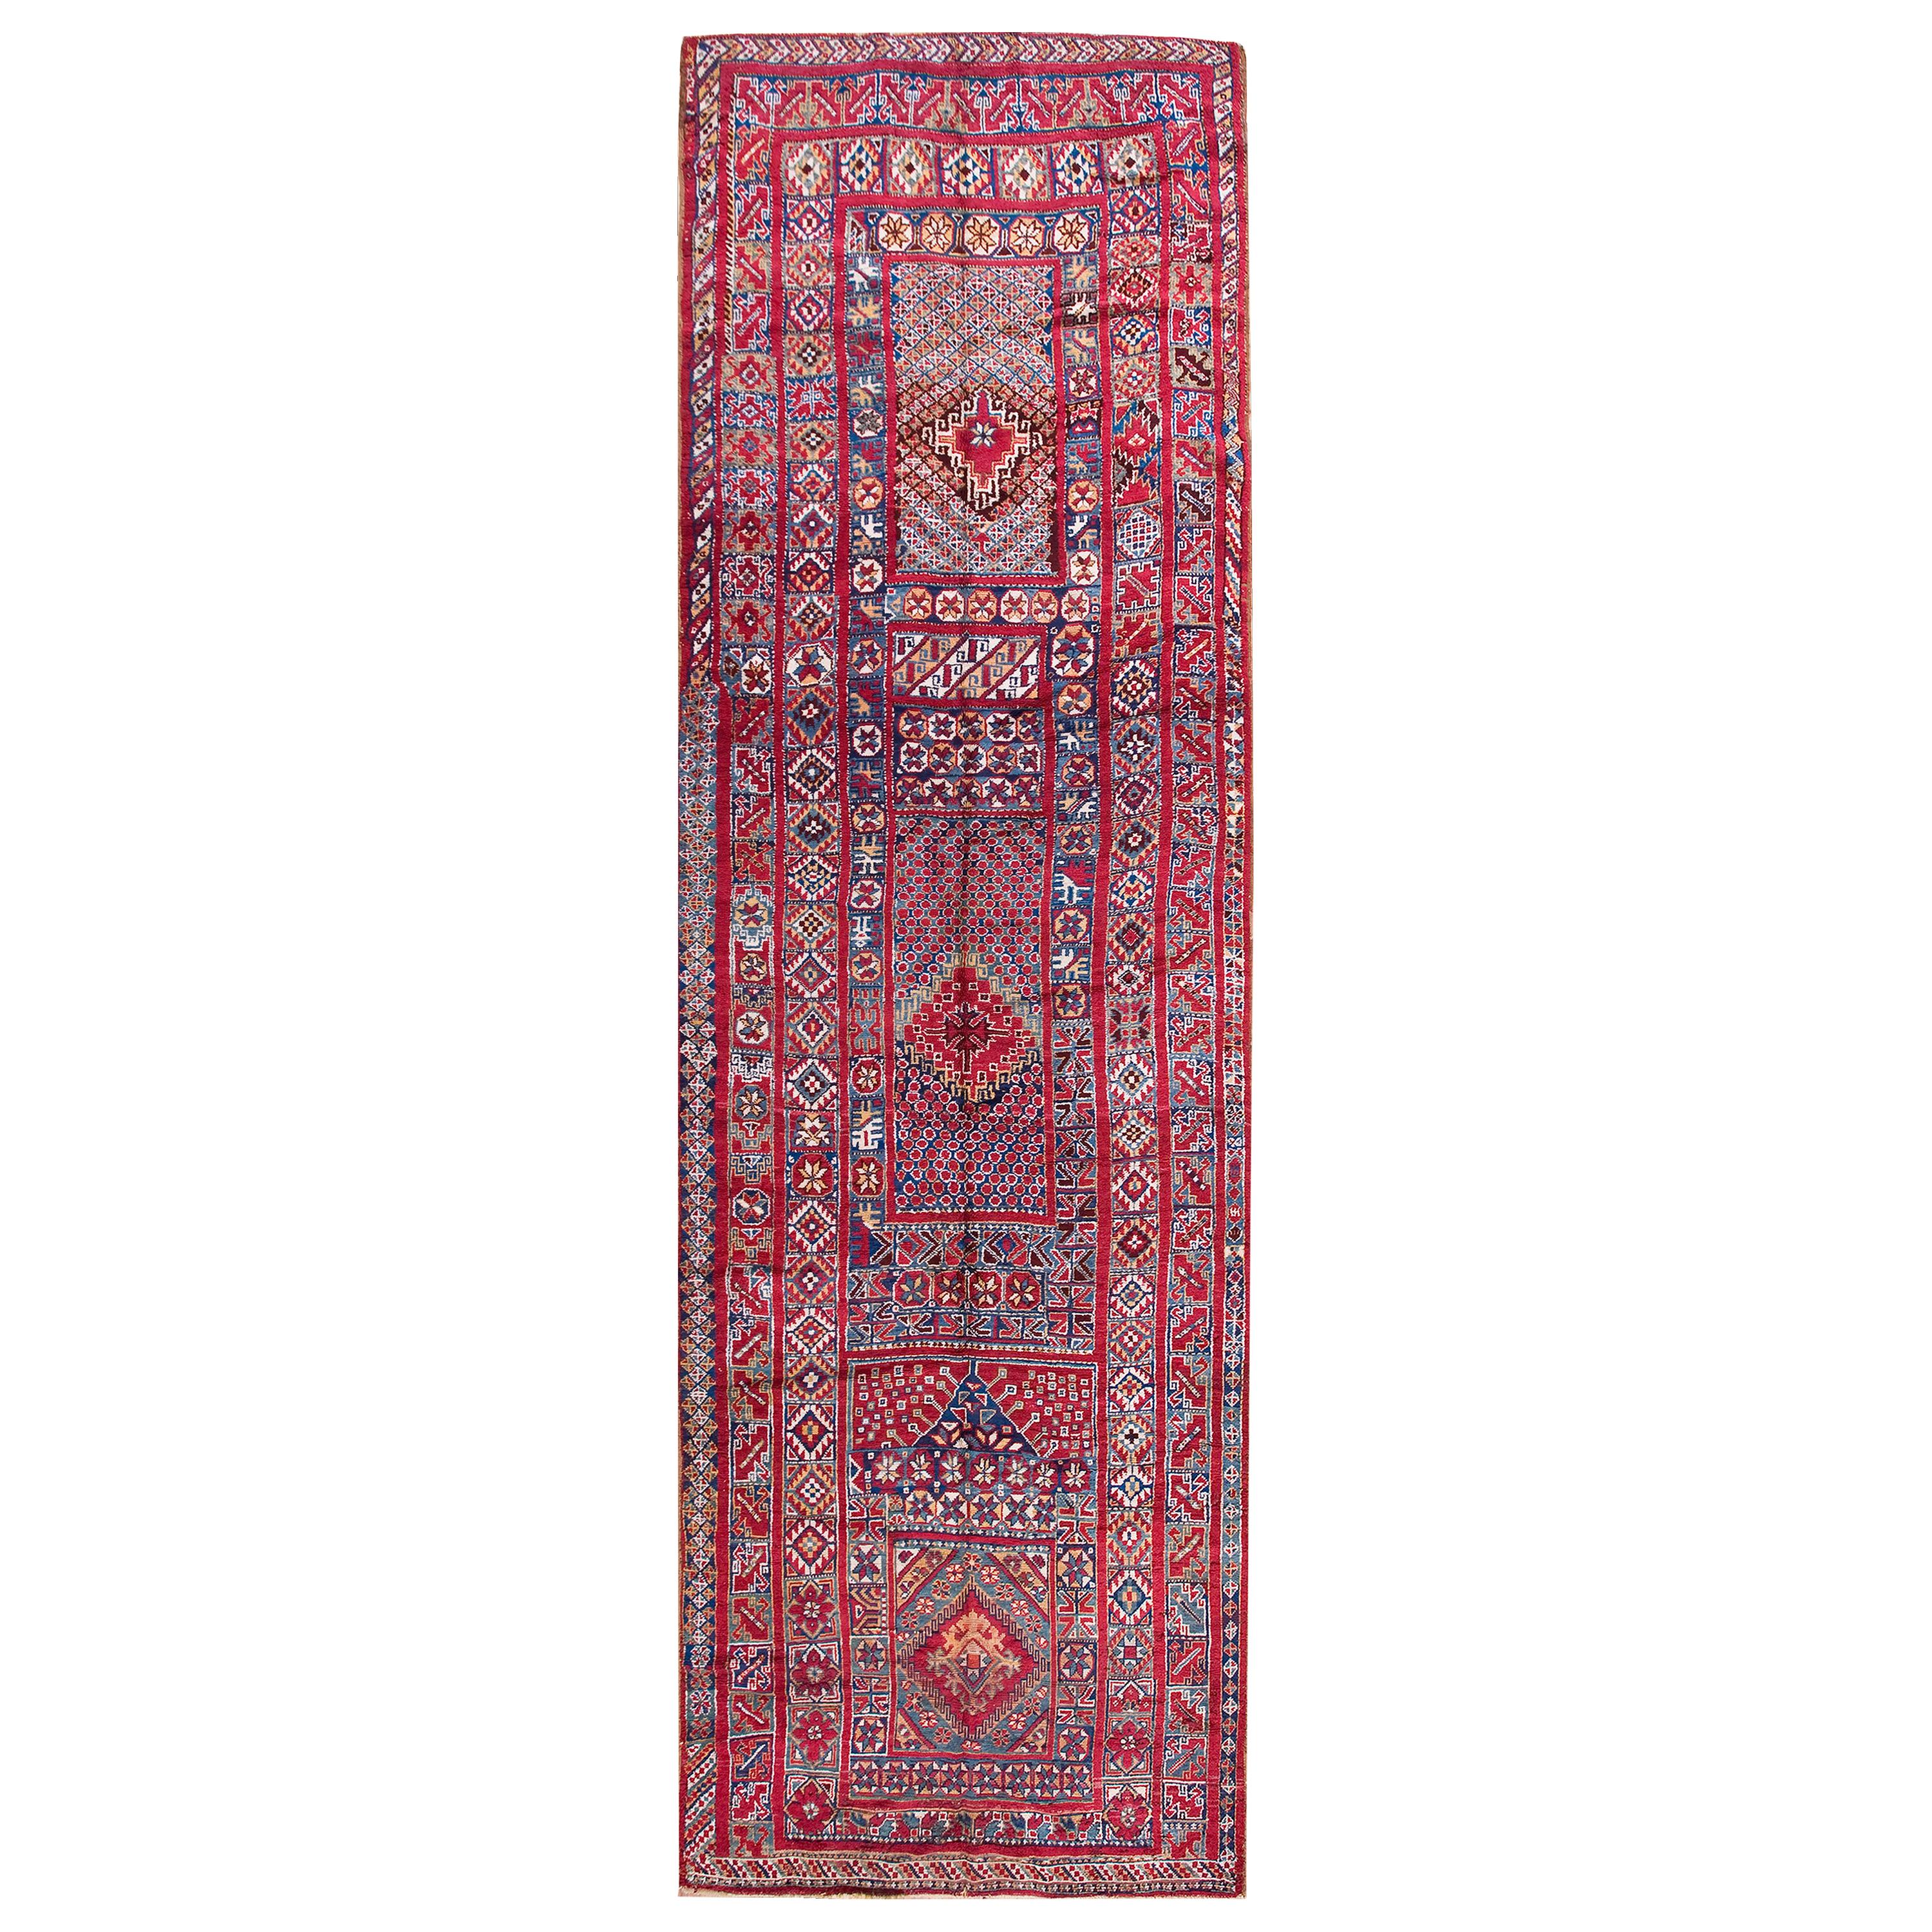 Antique Moroccan Rug